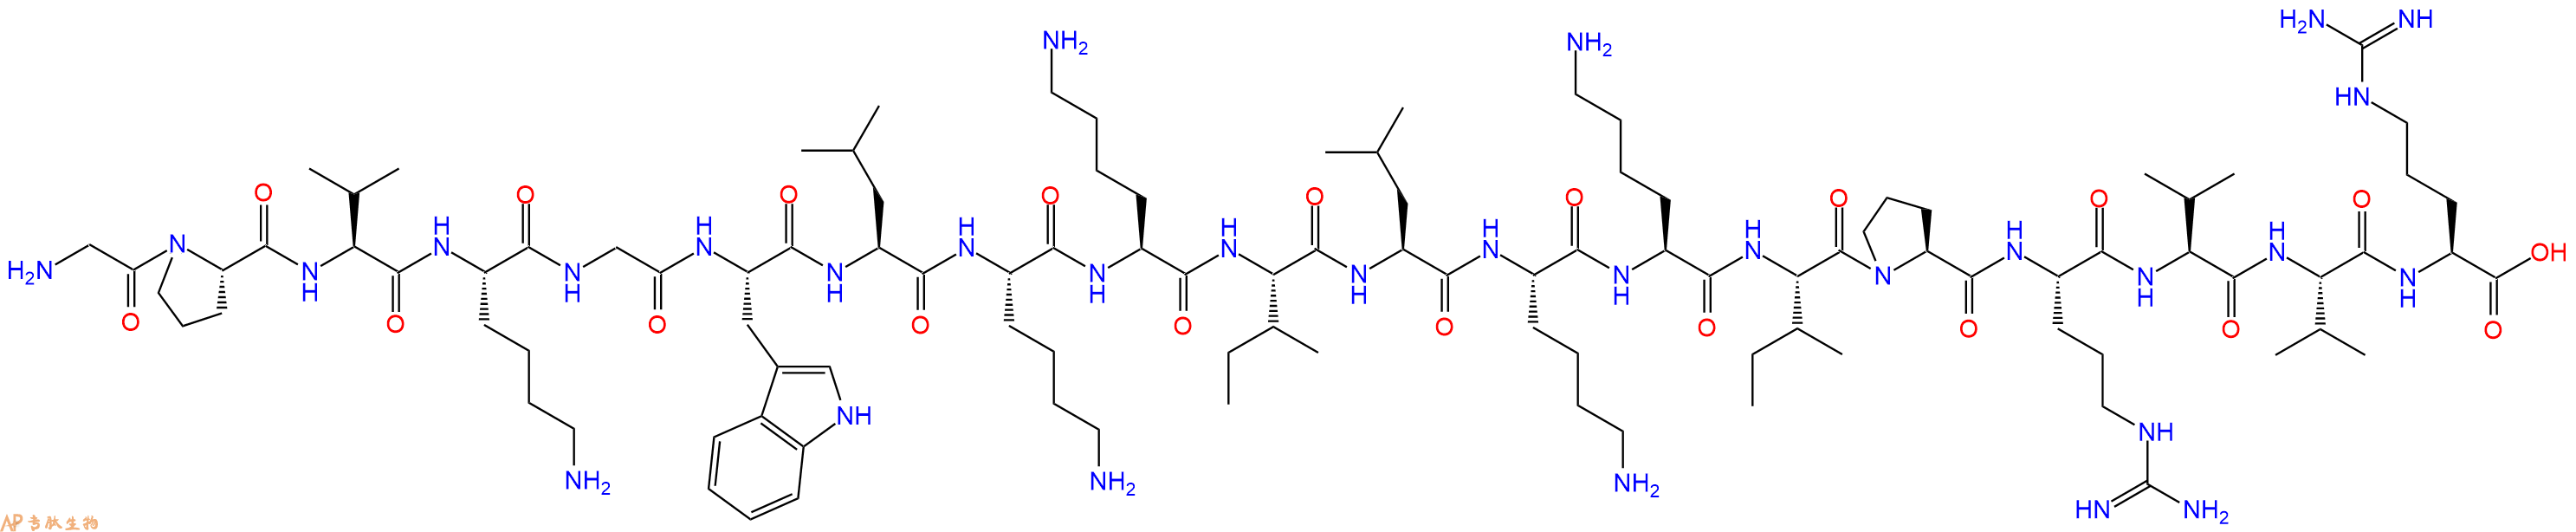 专肽生物产品十九肽GPVKGWLKKILKKIPRVVR